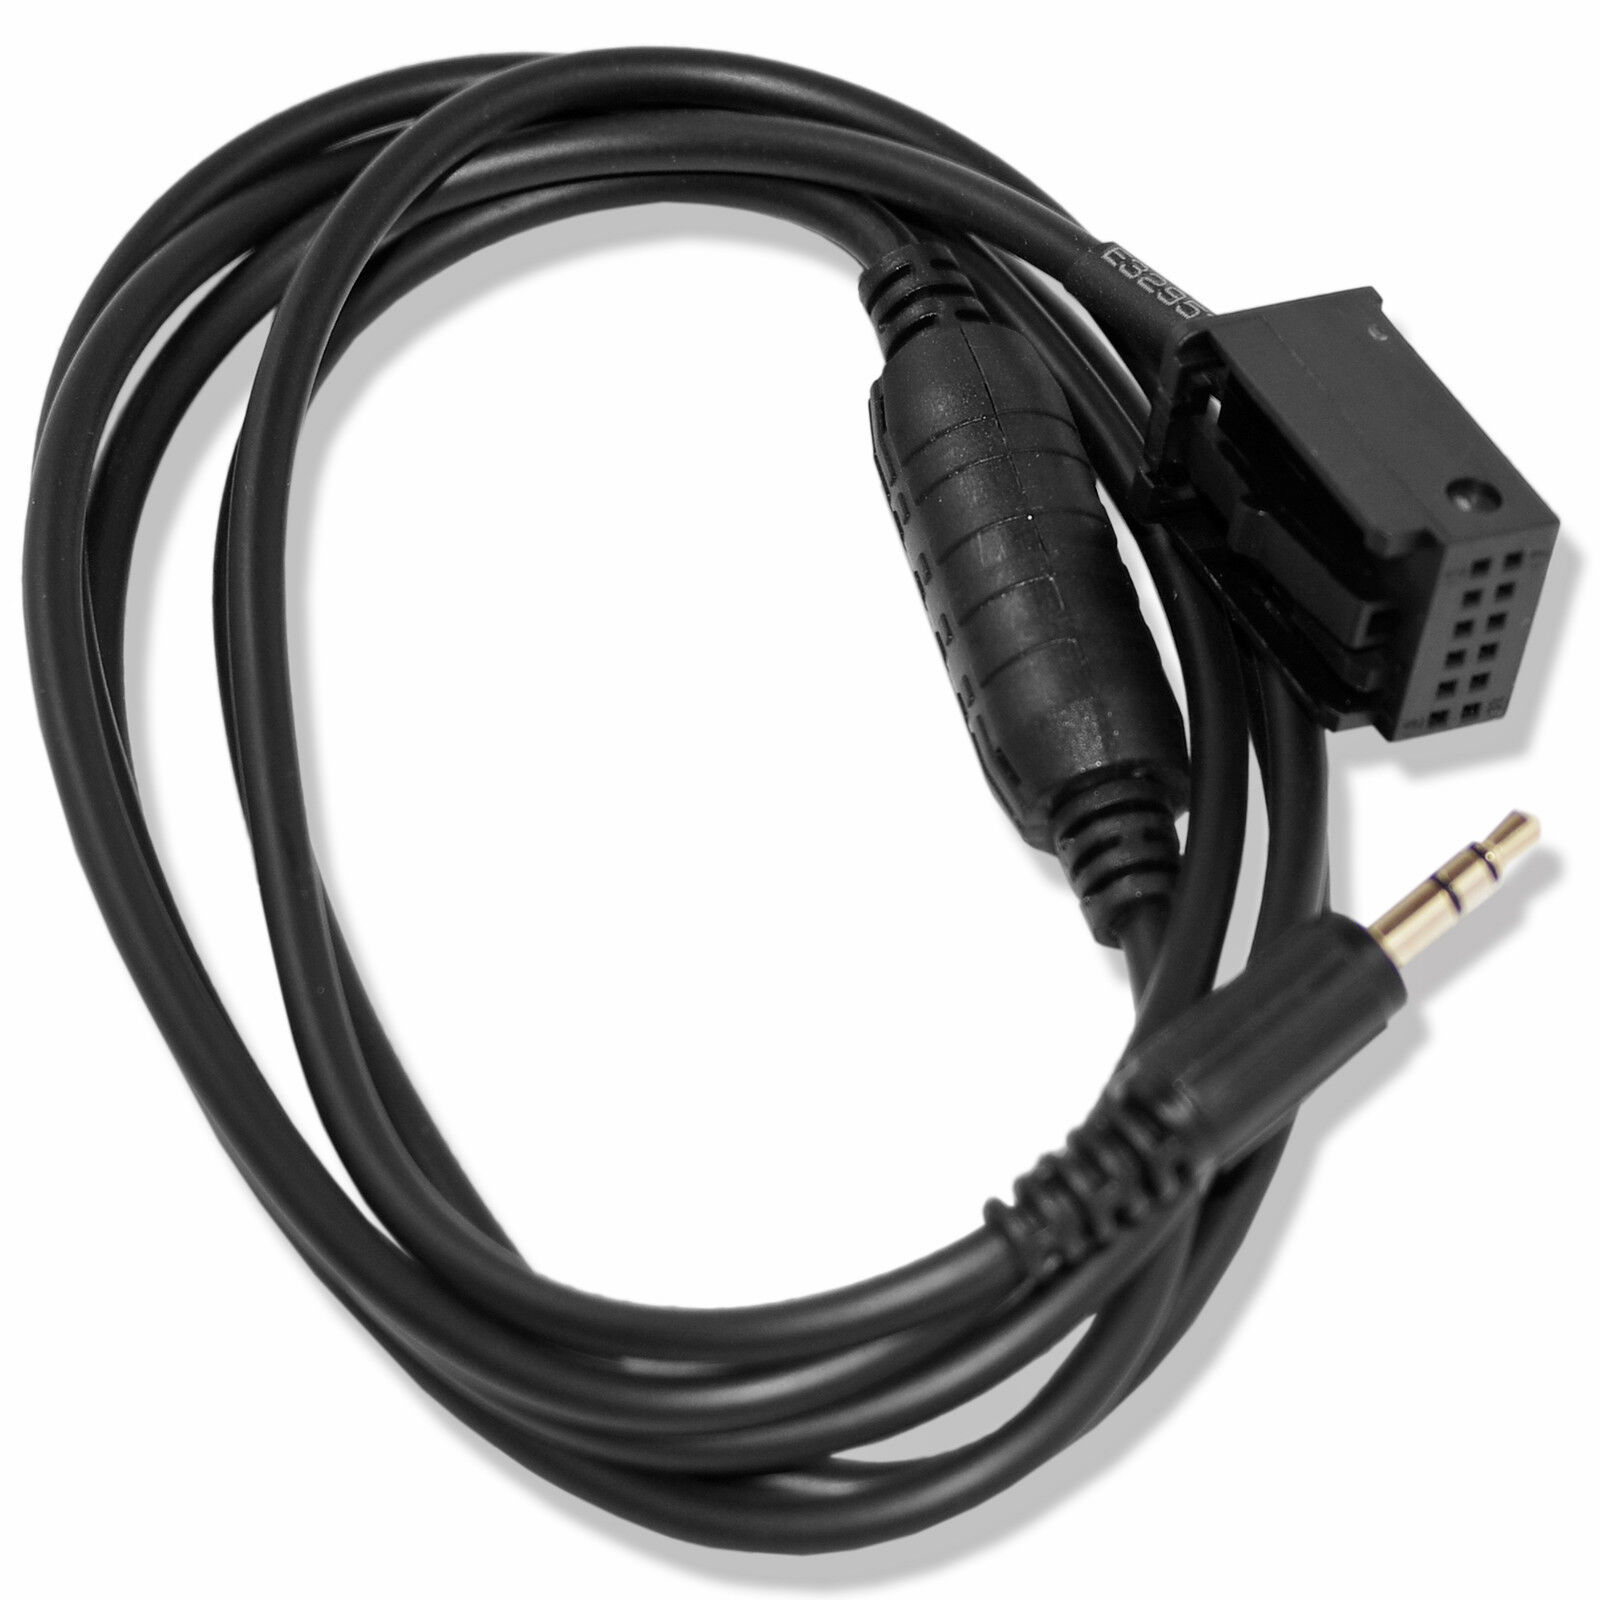 New 3.5MM Male AUX Audio Adapter Cable For BMW Z4 E83 E85 E86 X3 MINI COOPER